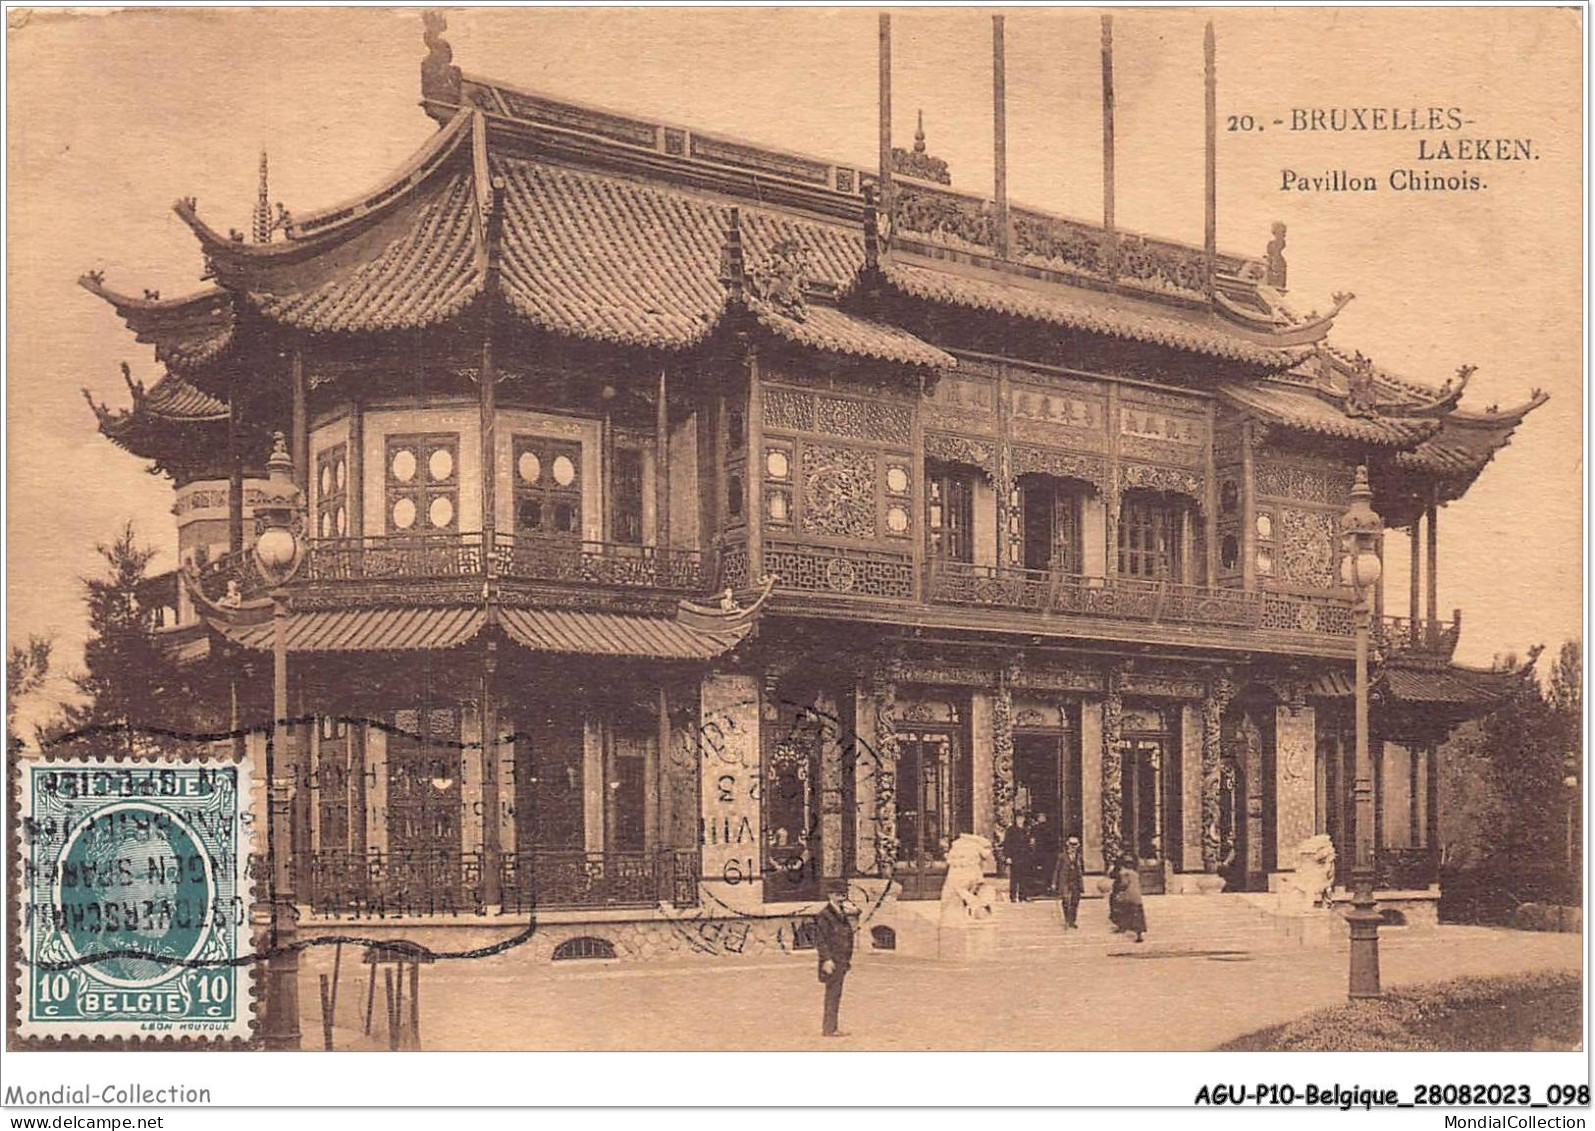 AGUP10-0858-BELGIQUE - BRUXELLES-LAEKEN - Pavillon Chinois - Monuments, édifices